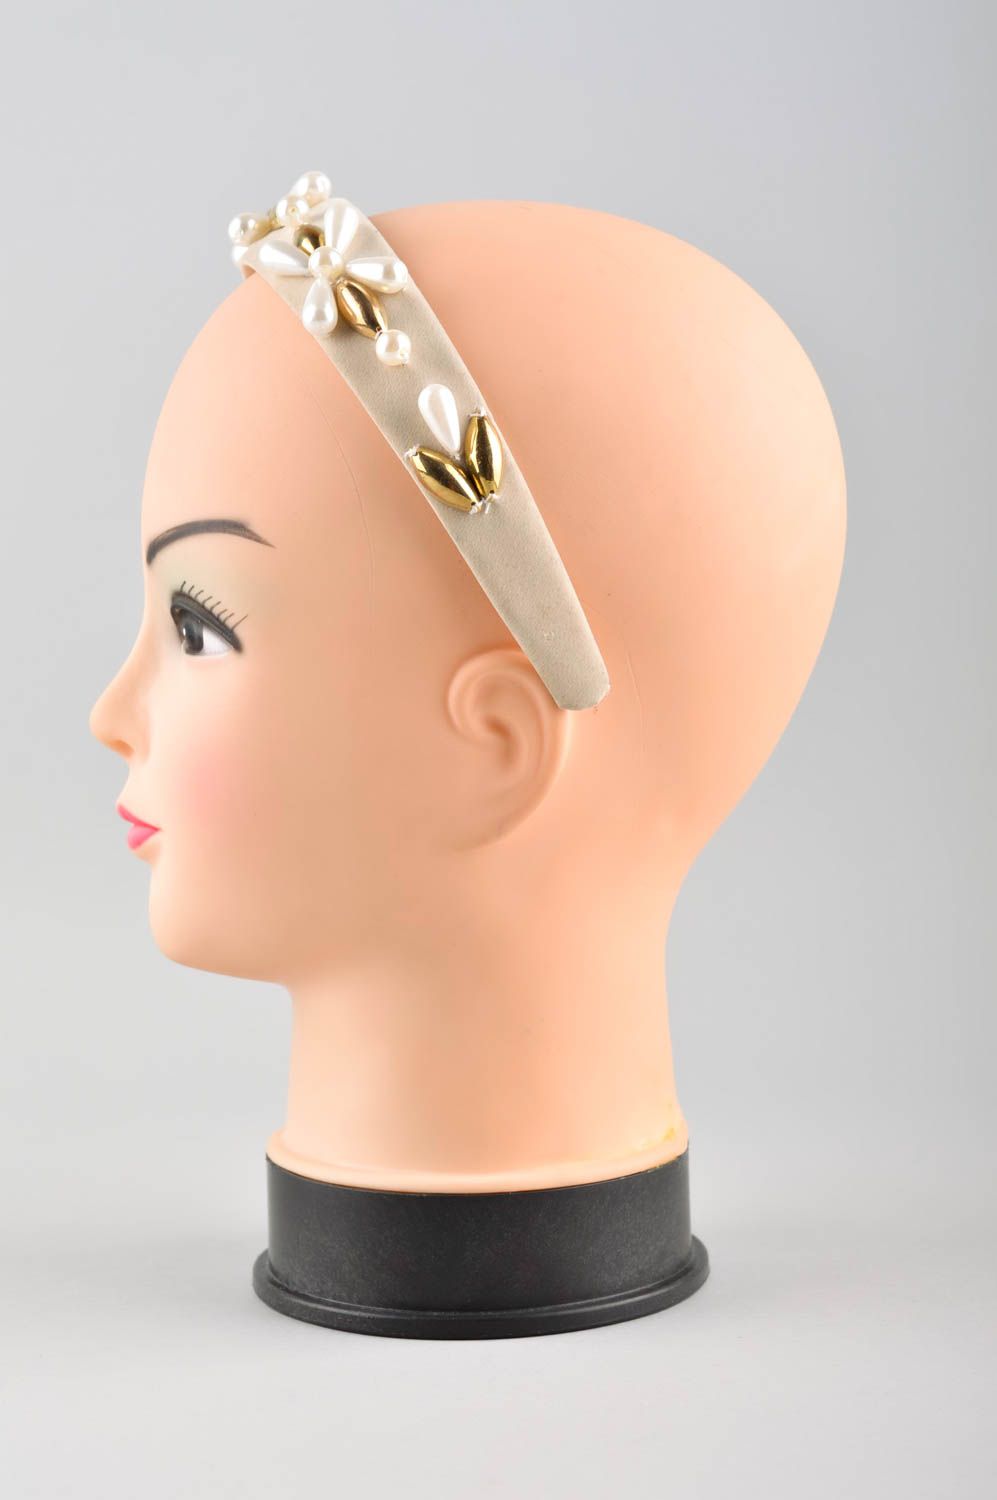 Аксессуар для волос хэнд мэйд обруч на голову белый нарядный женский аксессуар фото 2